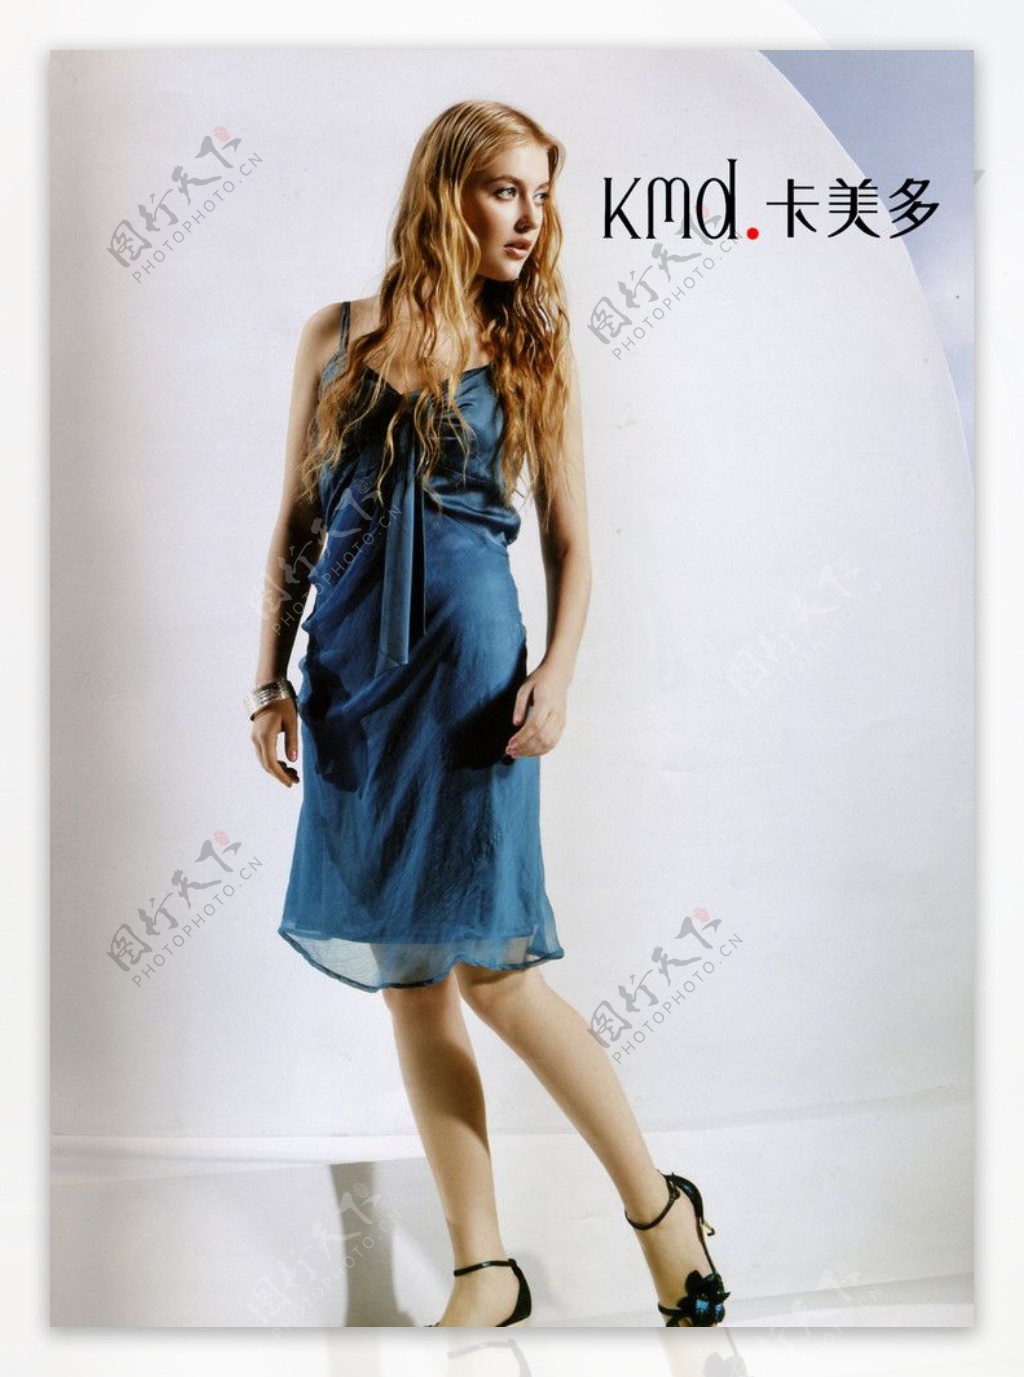 卡美多LOGO形象代言金发女郎时尚超短裙个性凉鞋新品600DPIJPG图片